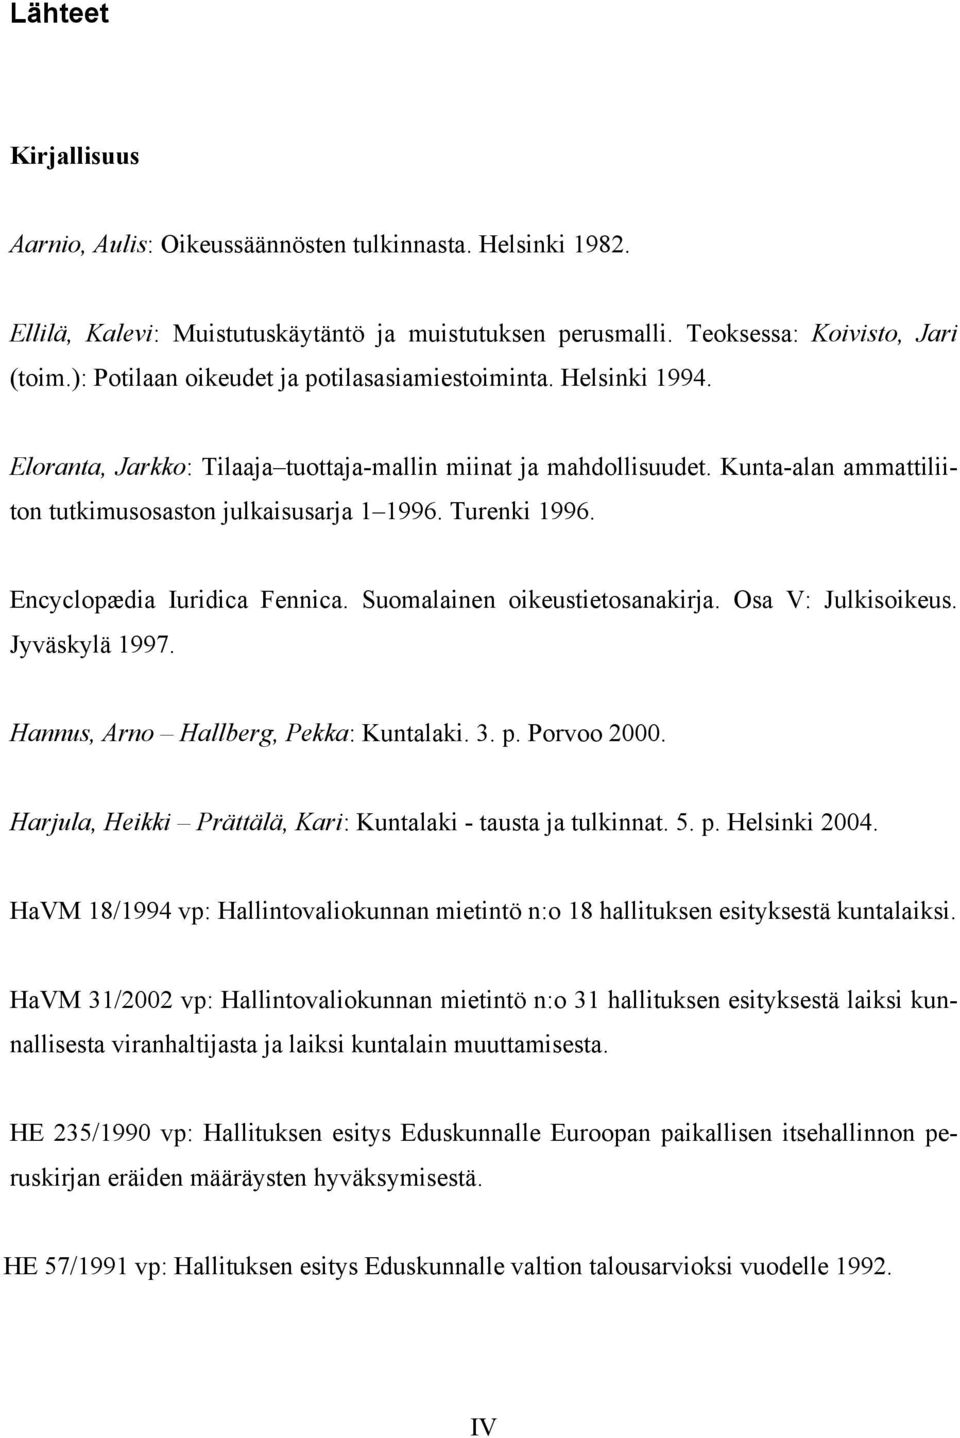 Turenki 1996. Encyclopædia Iuridica Fennica. Suomalainen oikeustietosanakirja. Osa V: Julkisoikeus. Jyväskylä 1997. Hannus, Arno Hallberg, Pekka: Kuntalaki. 3. p. Porvoo 2000.